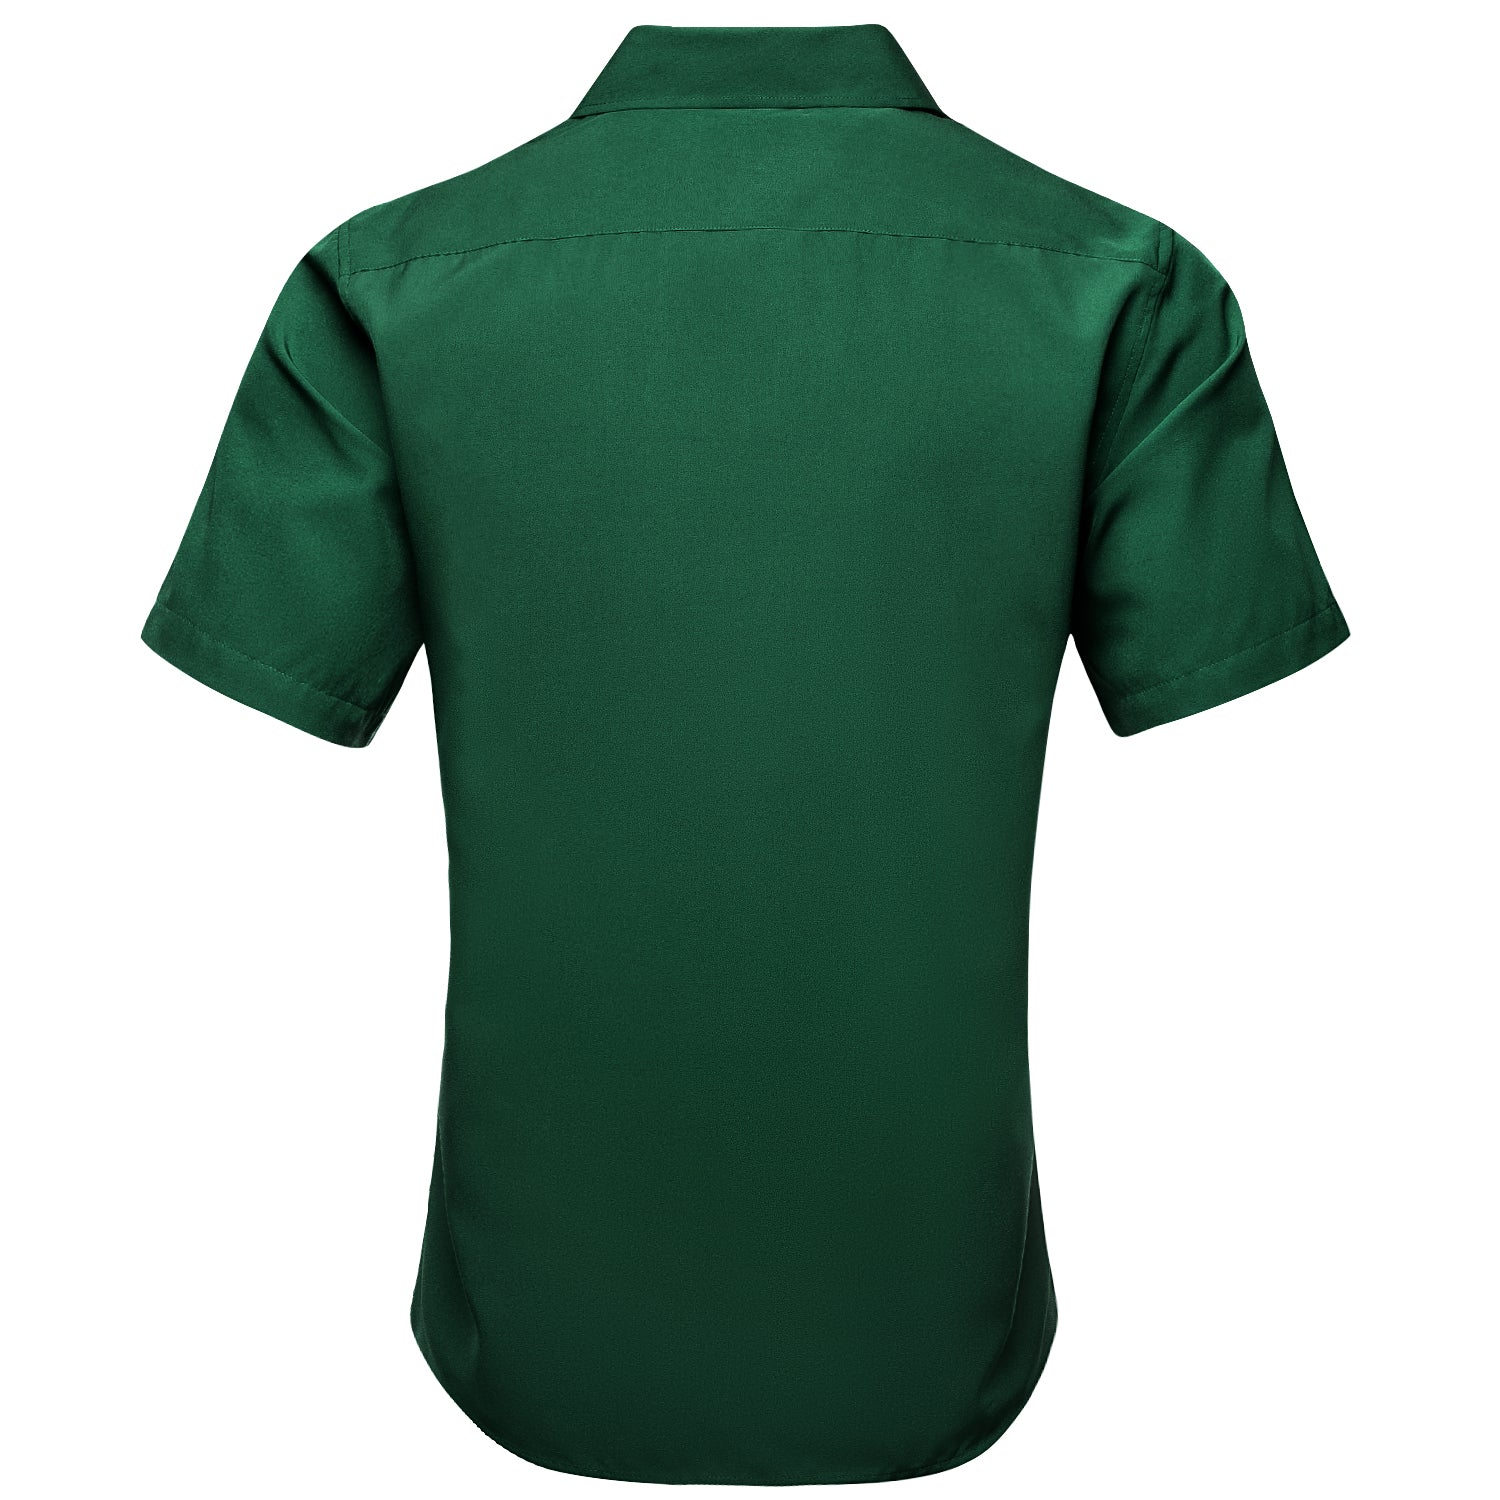 Emerald Green Solid Silk Men's Short Sleeve Shirt